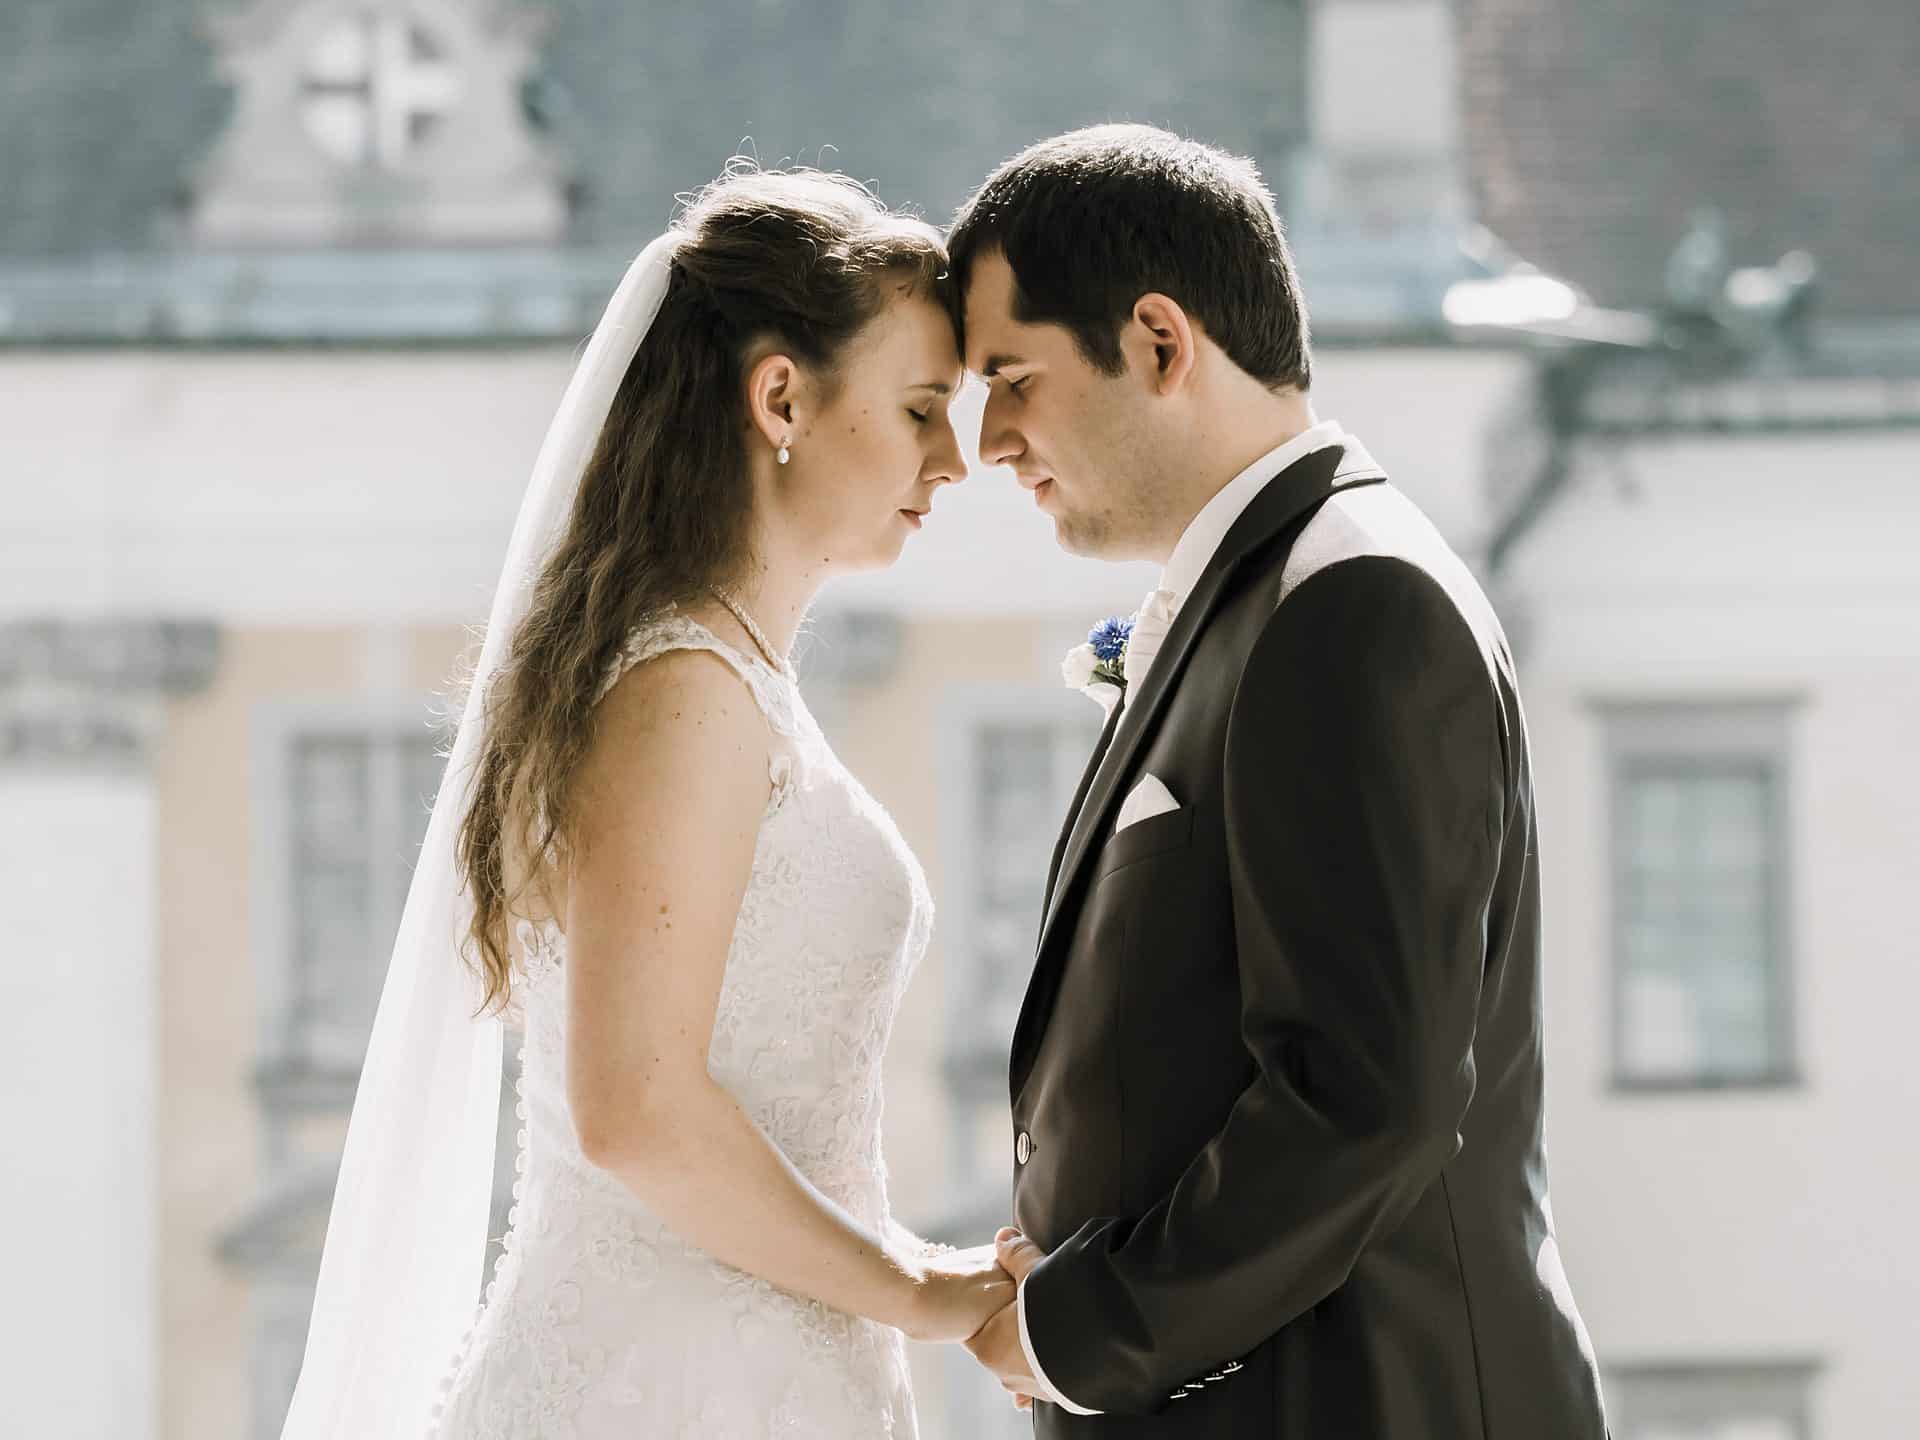 Eine Braut und ein Bräutigam schauen sich vor einem Gebäude an.